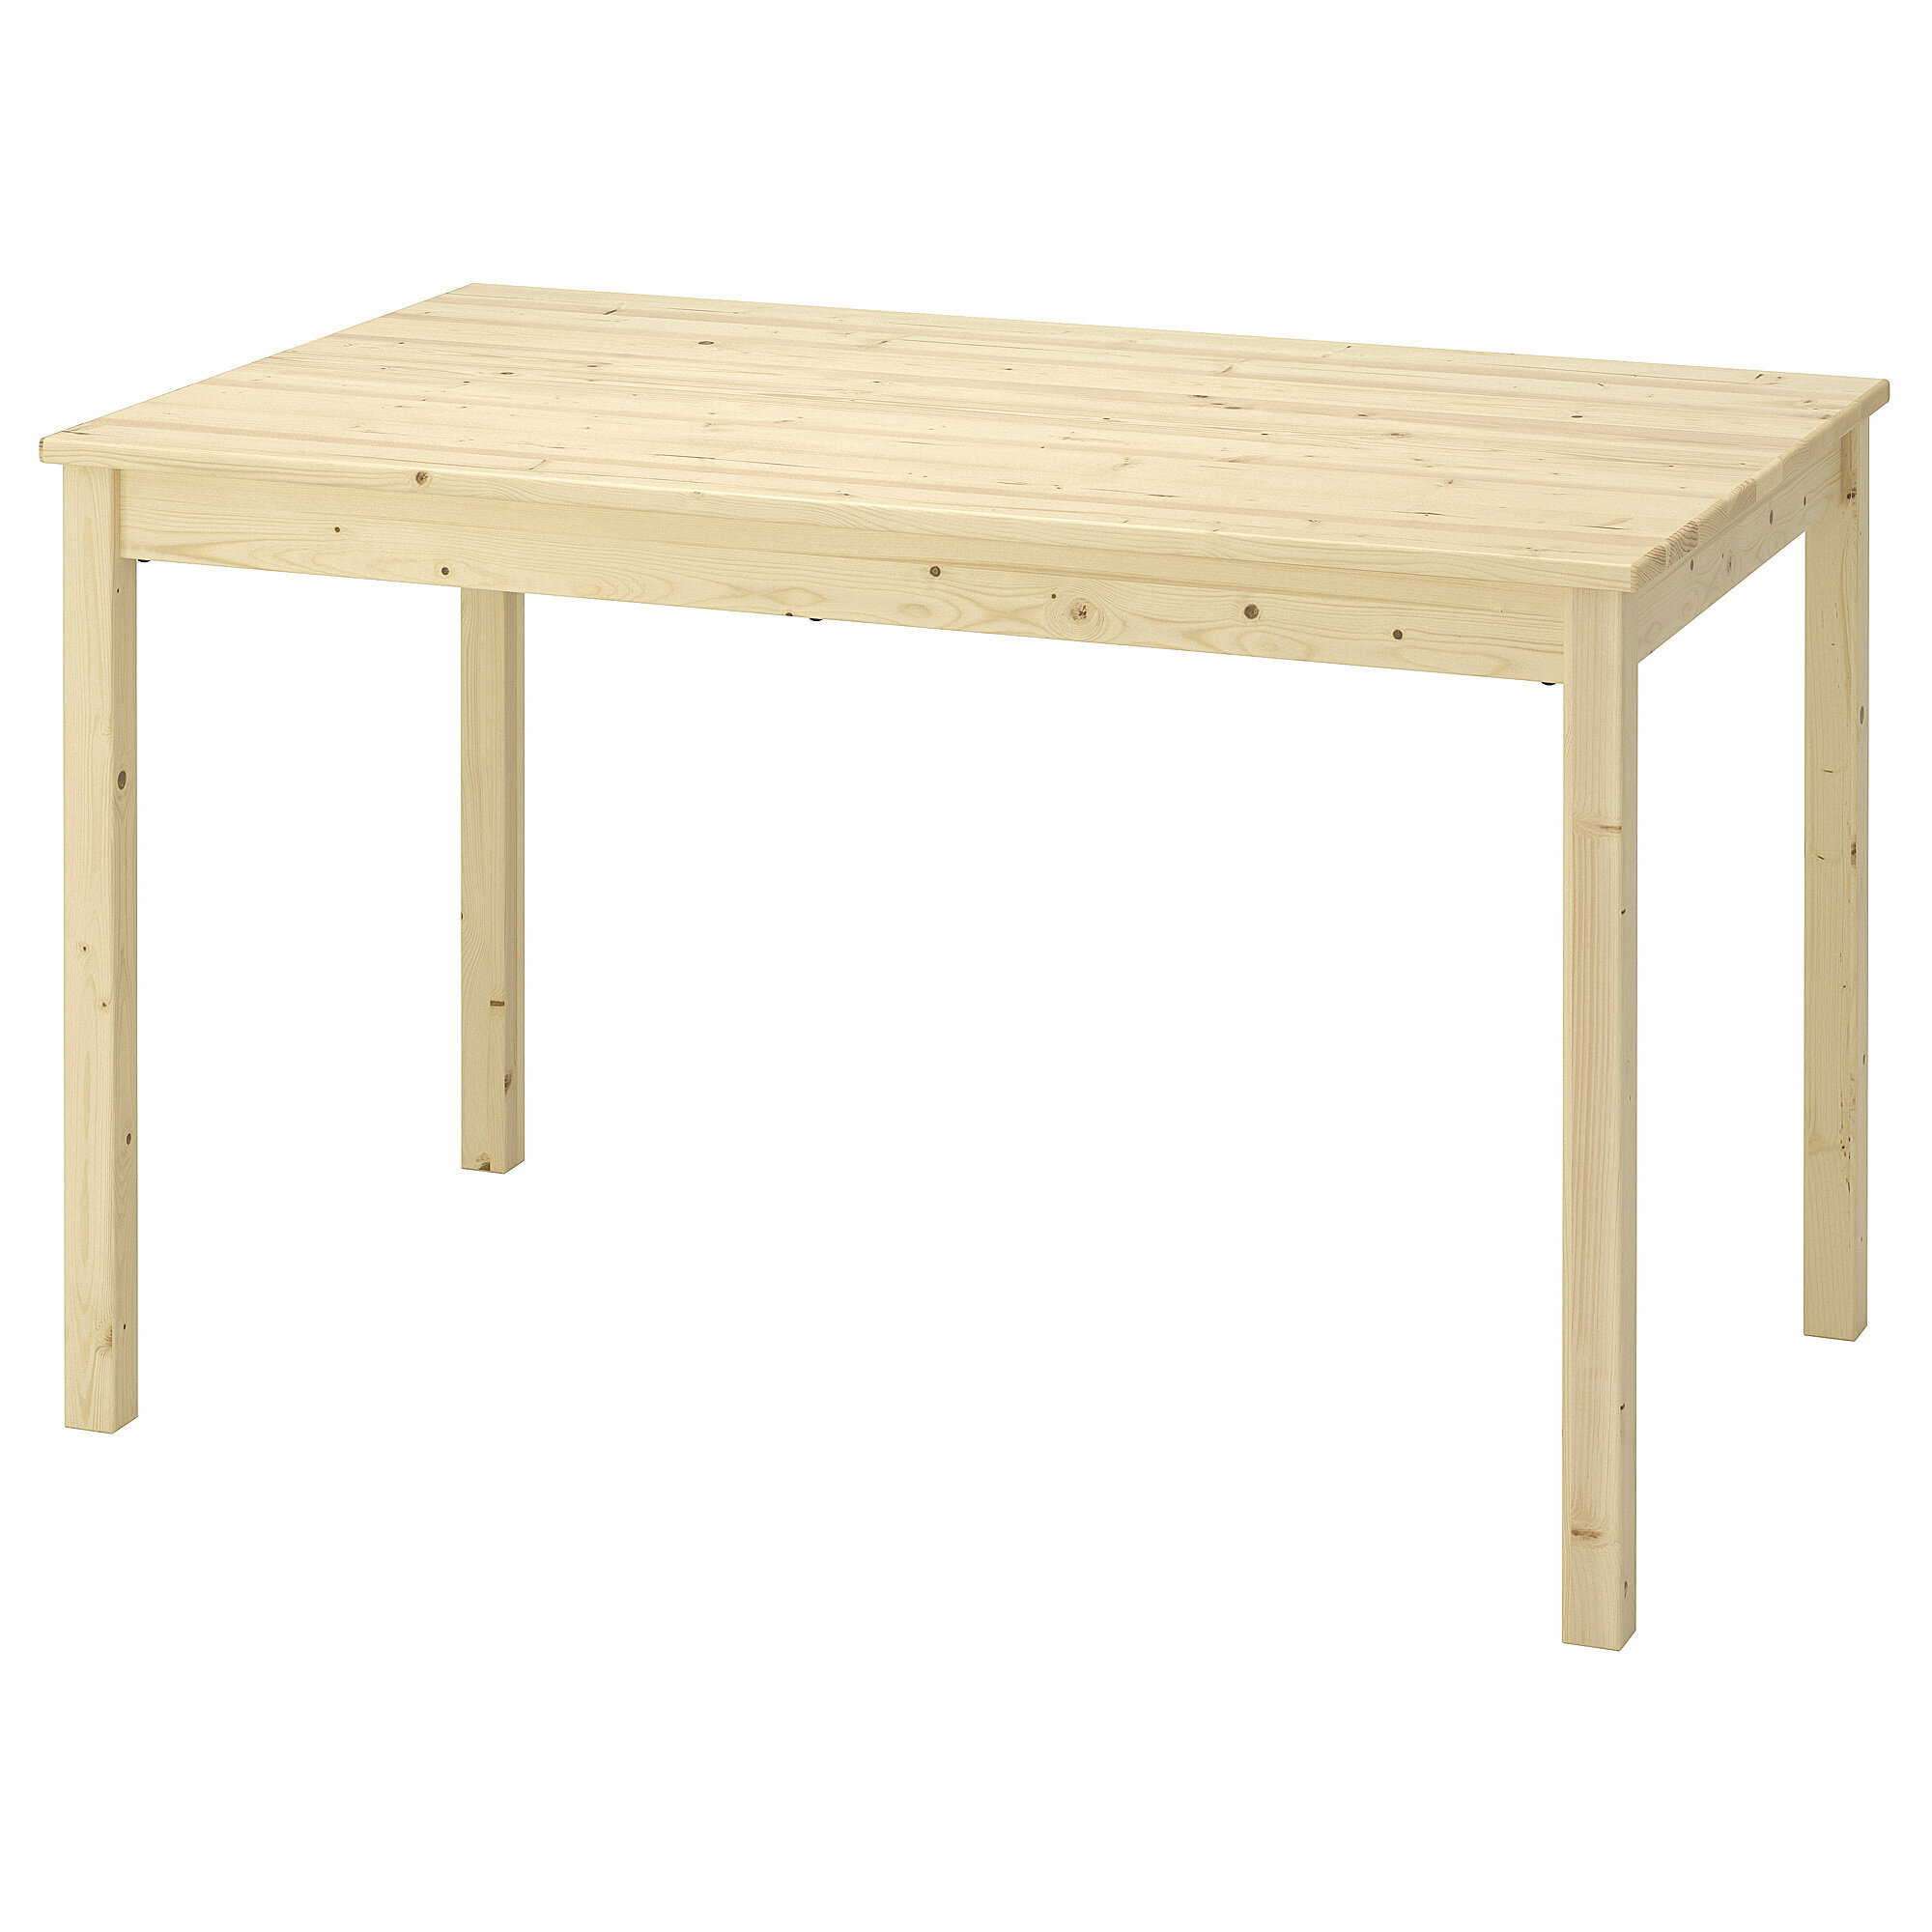 Стол деревянный IKEA Ingo, из массива сосны 120*75 см, (Икеа Ингу)